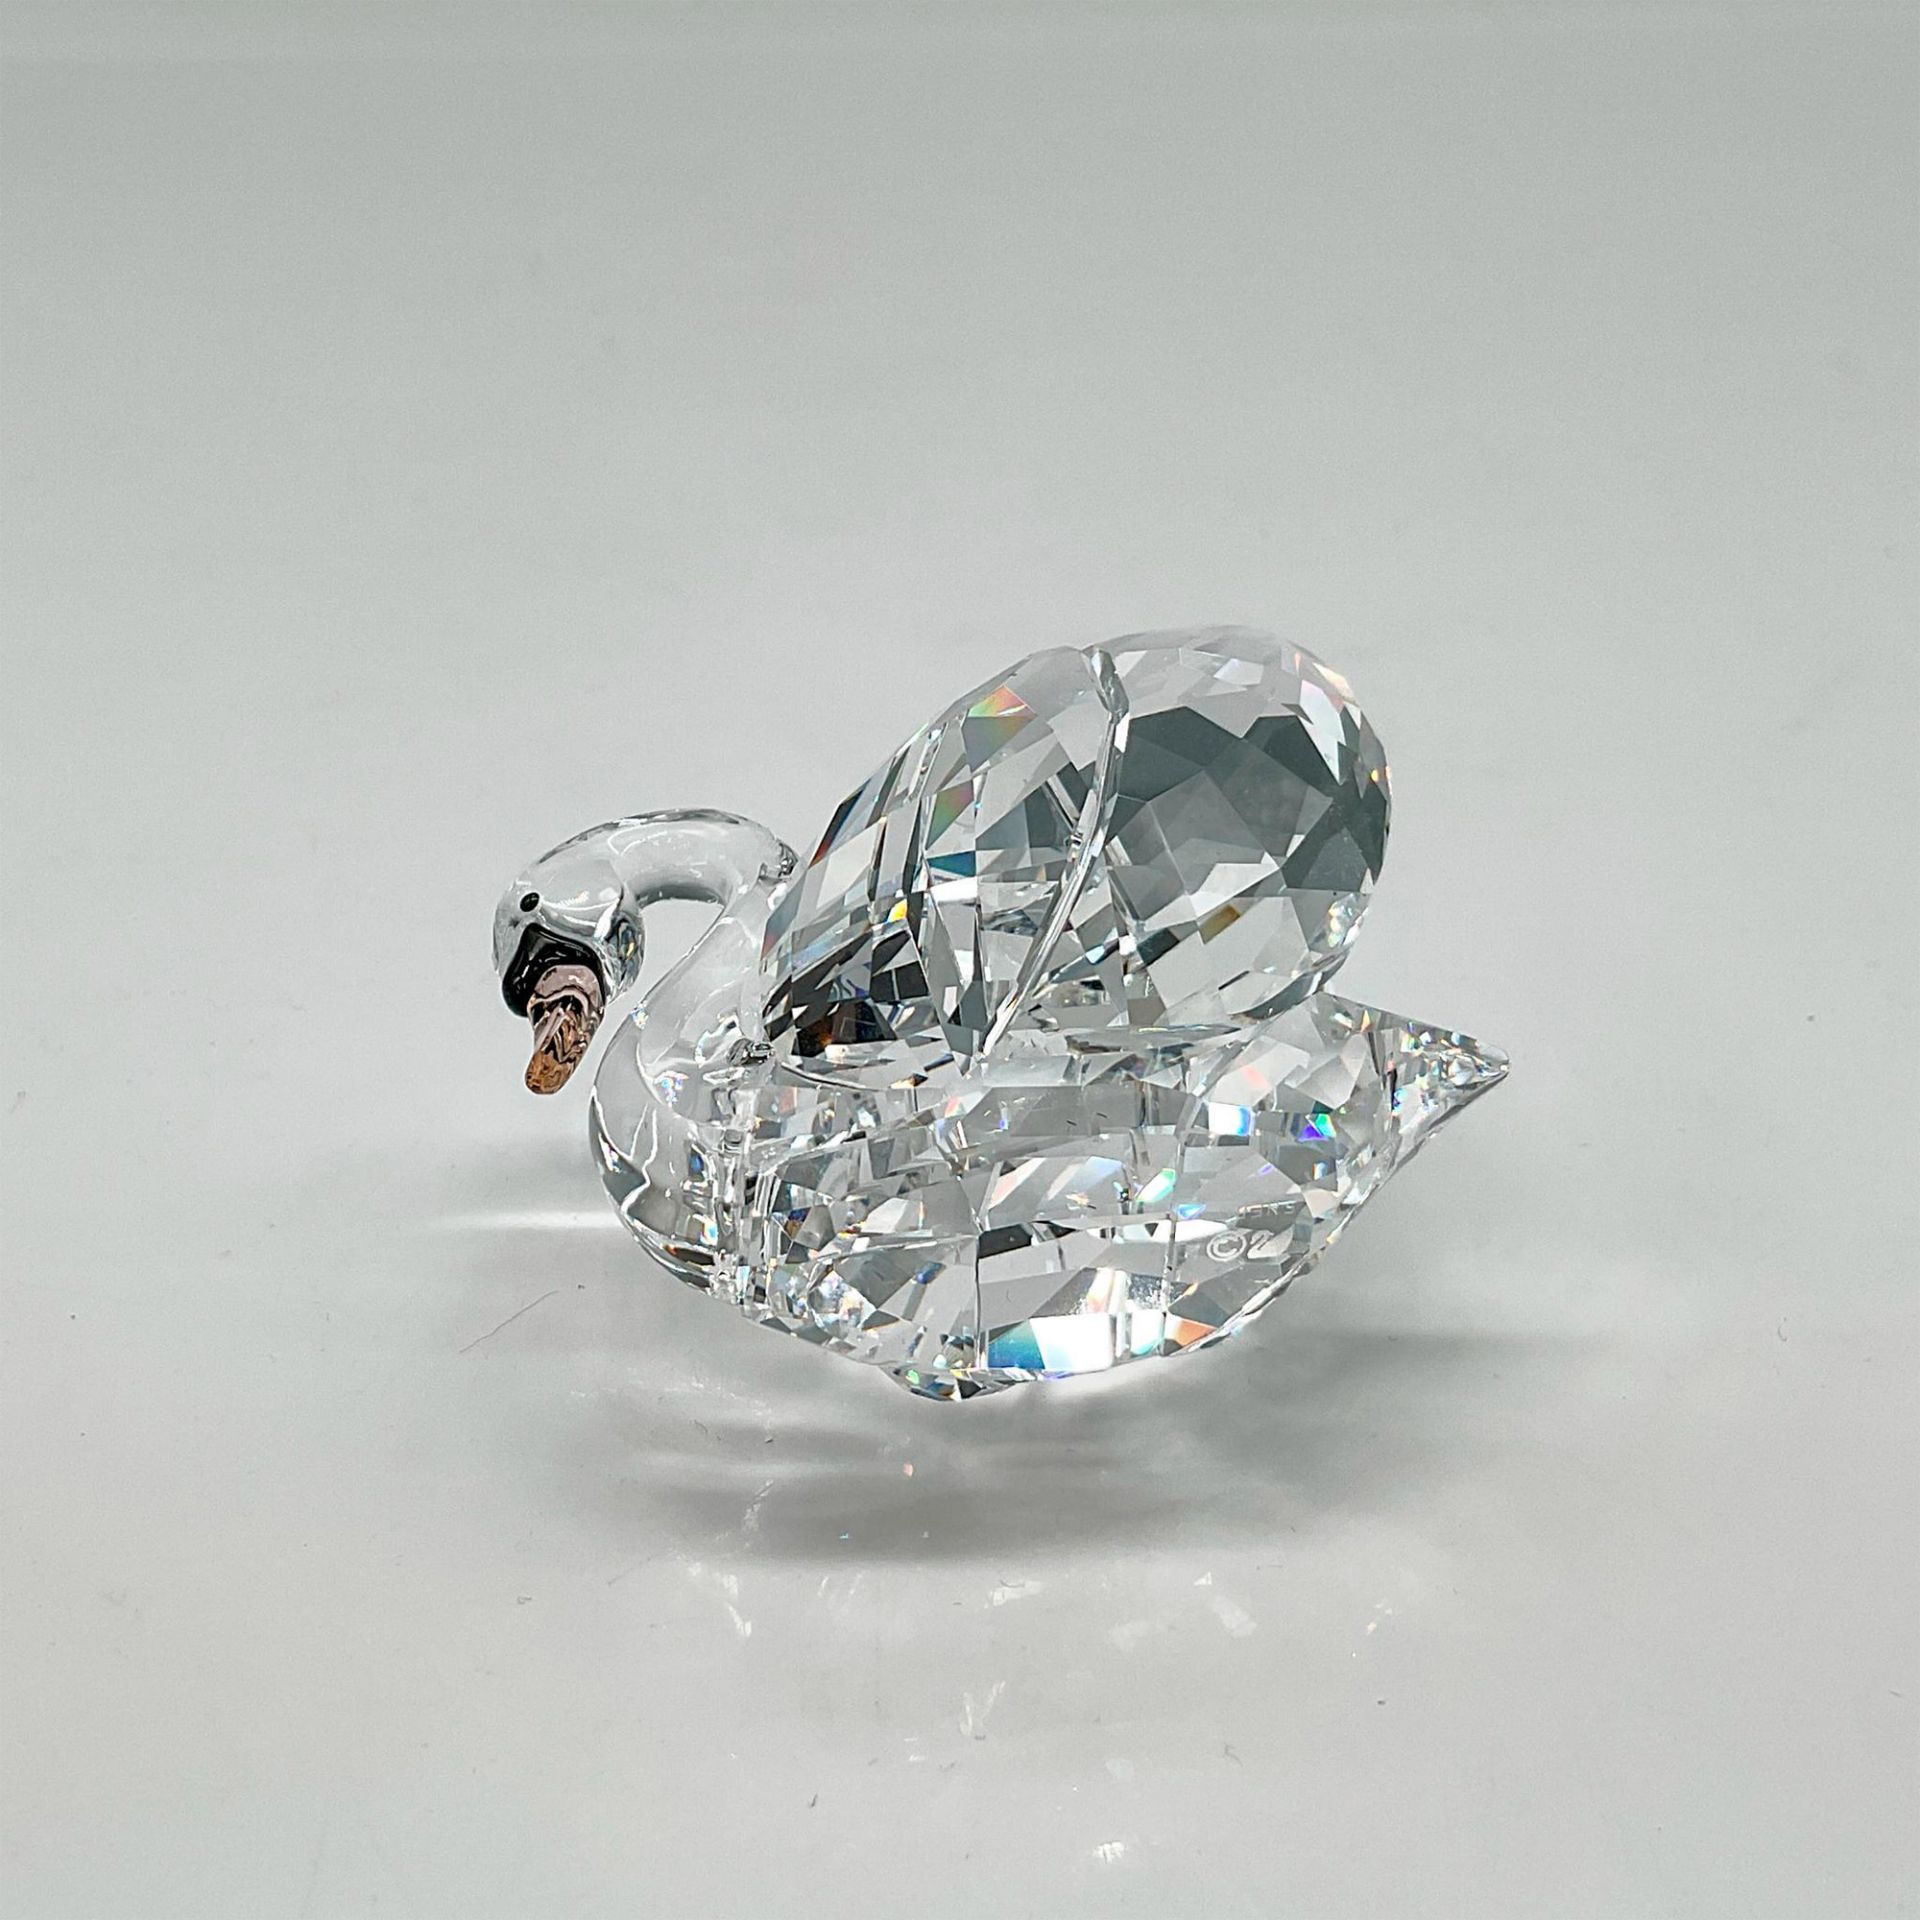 Swarovski Crystal Figurine, Medium Swan - Image 3 of 4